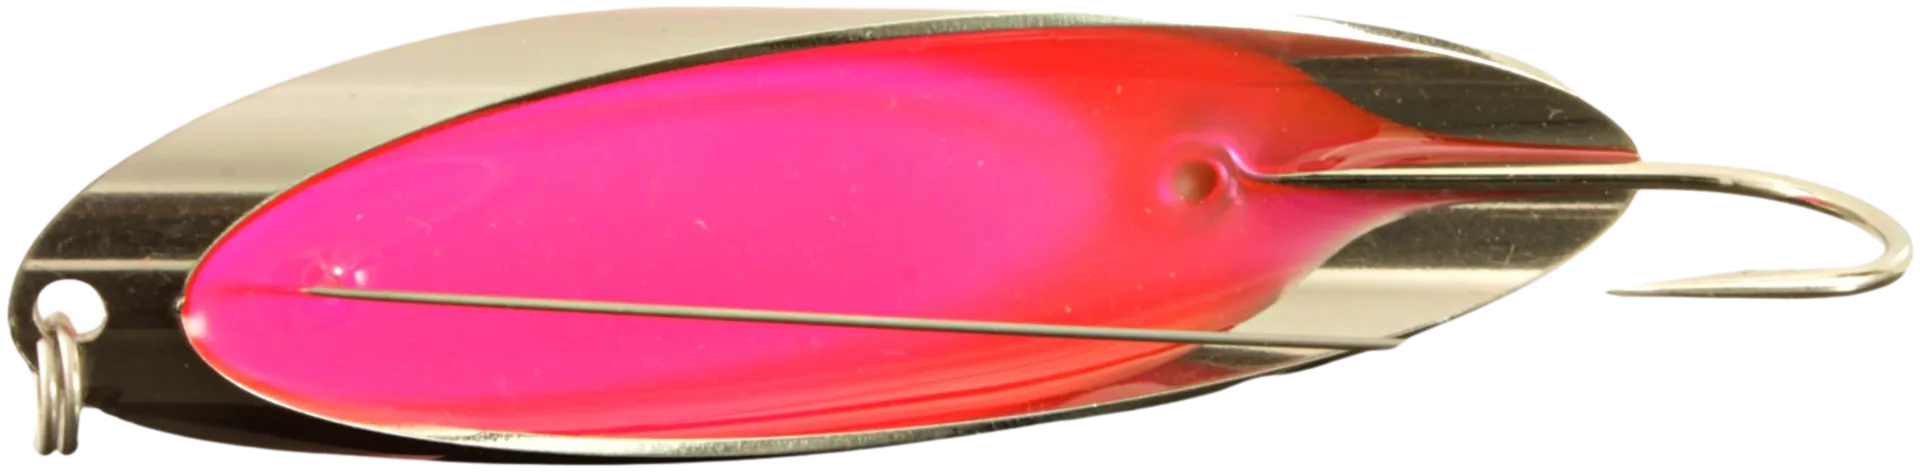 Norolan Pike Spoon ruohikkouistin - Lusikkauistin hauelle ja ahvenelle - 7 cm / 12  g